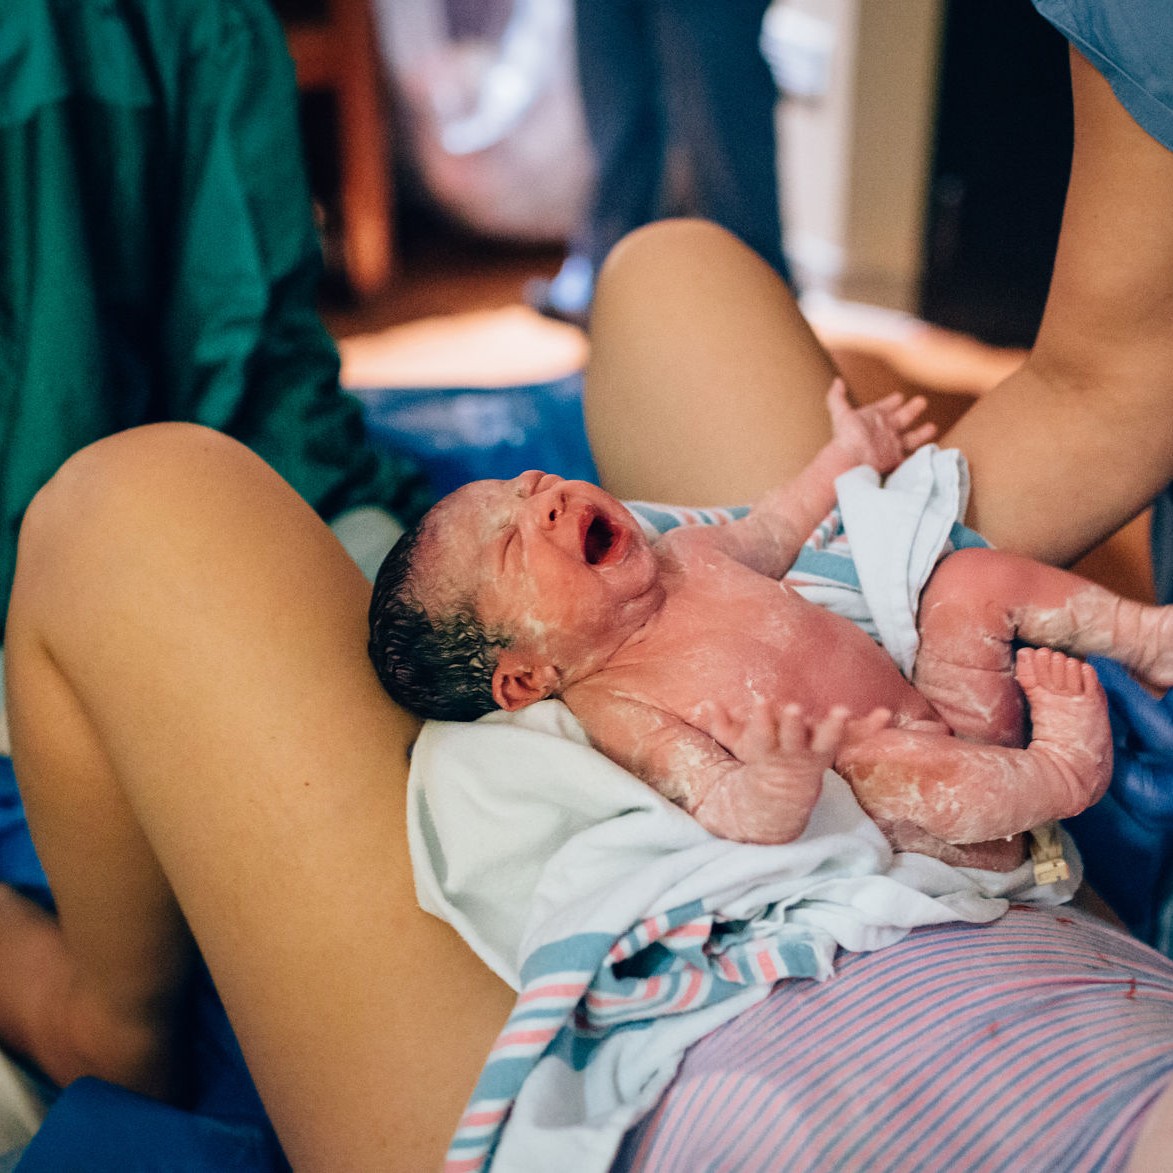 Why Are Births Still So Popular?